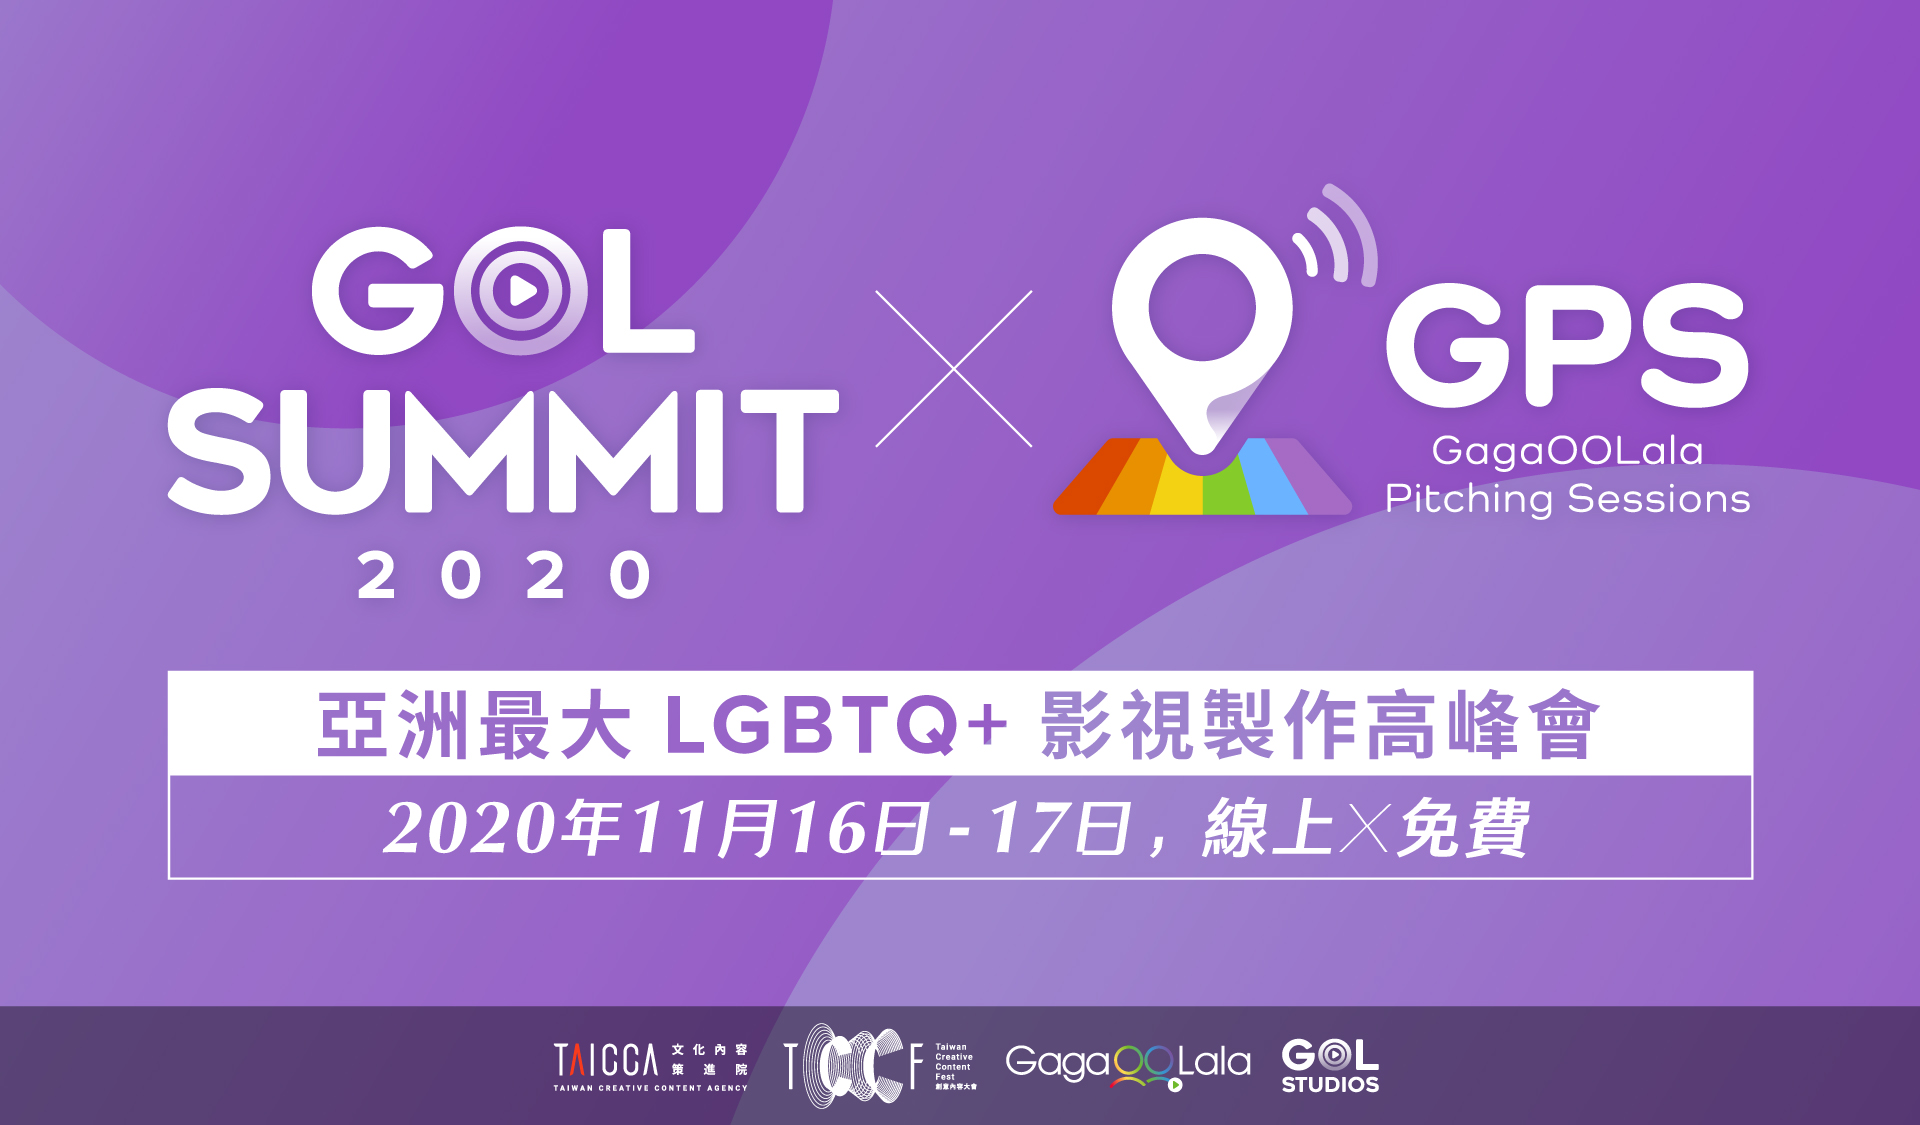 台灣首度線上論壇結合即時視訊聊天功能 串連各國參加者開啟合作契機            「2020 GOL SUMMIT 高峰會」五場LGBTQ+ 影視論壇即日起免費報名